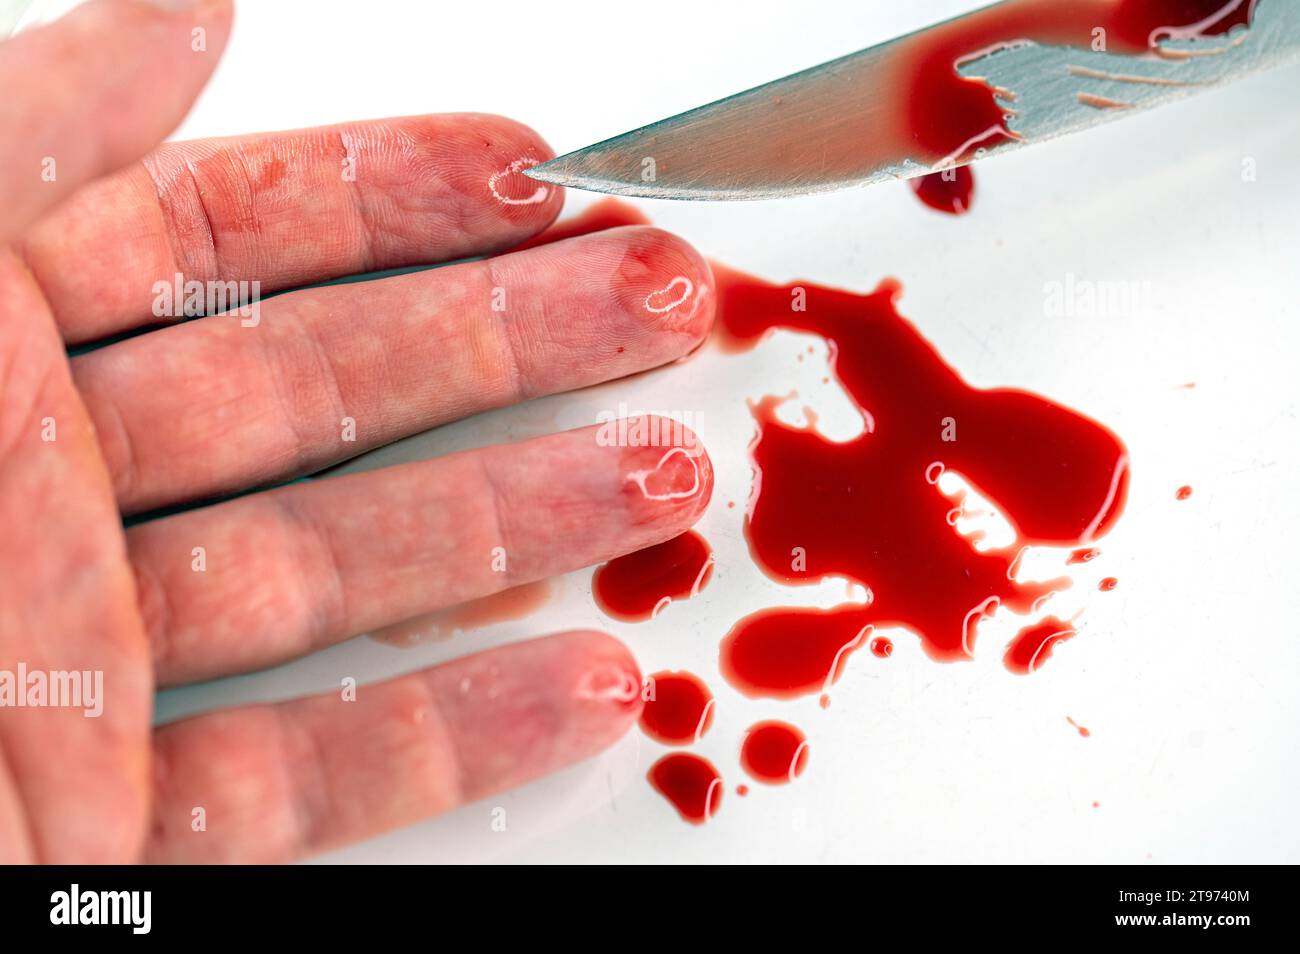 Primo piano del braccio in una sanguinosa pozzanghera e coltello con sangue sulla superficie bianca, immagine concettuale di suicidio e omicidio Foto Stock